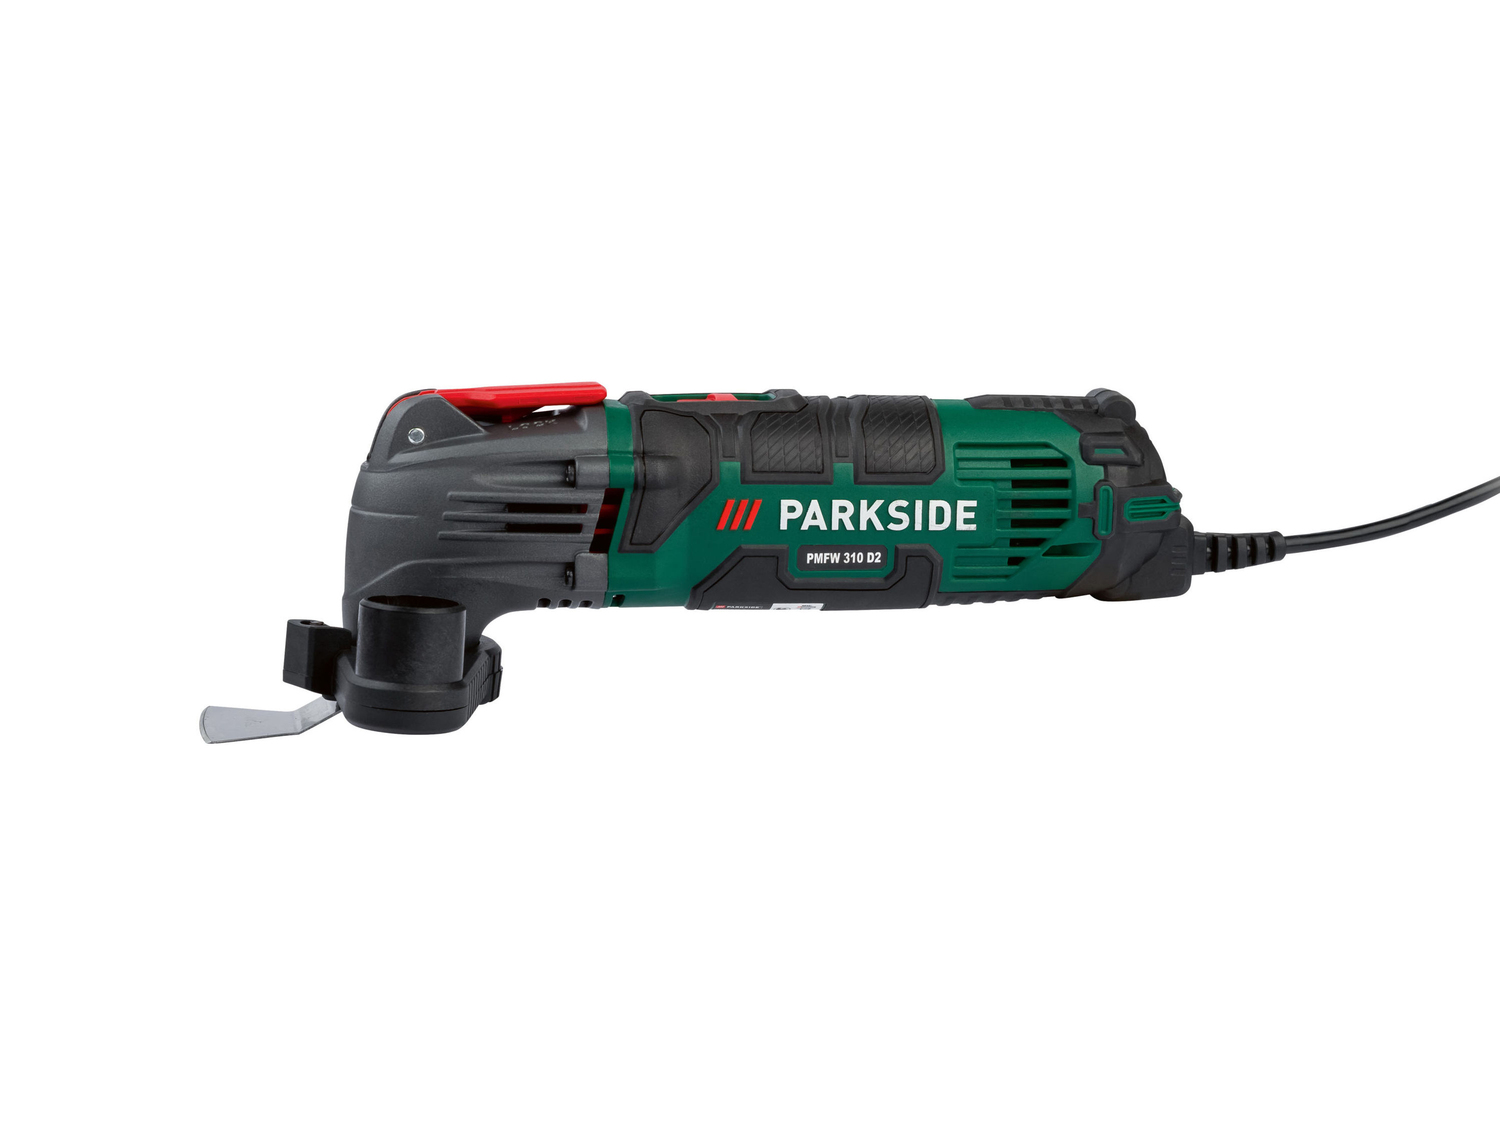 Elettroutensile multiuso Parkside PMFW310D2, prezzo 29.99 € 
- Tecnologia a oscillazione ...